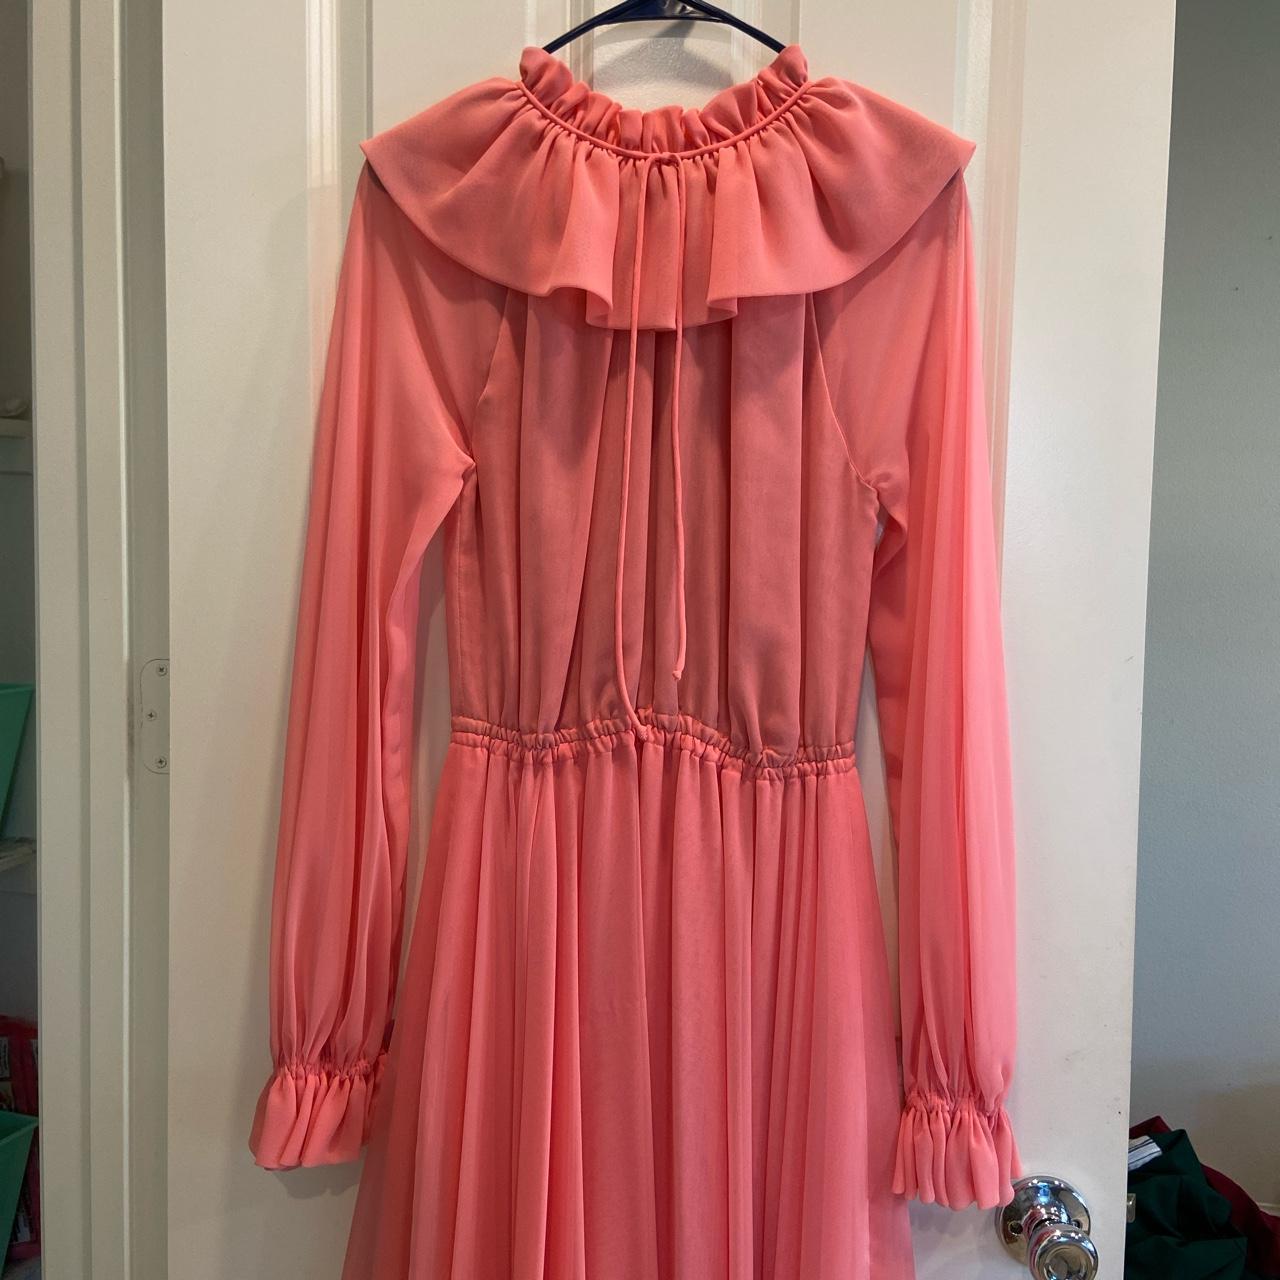 1970s pink dress #CottageCore, #PrairieDress,... - Depop